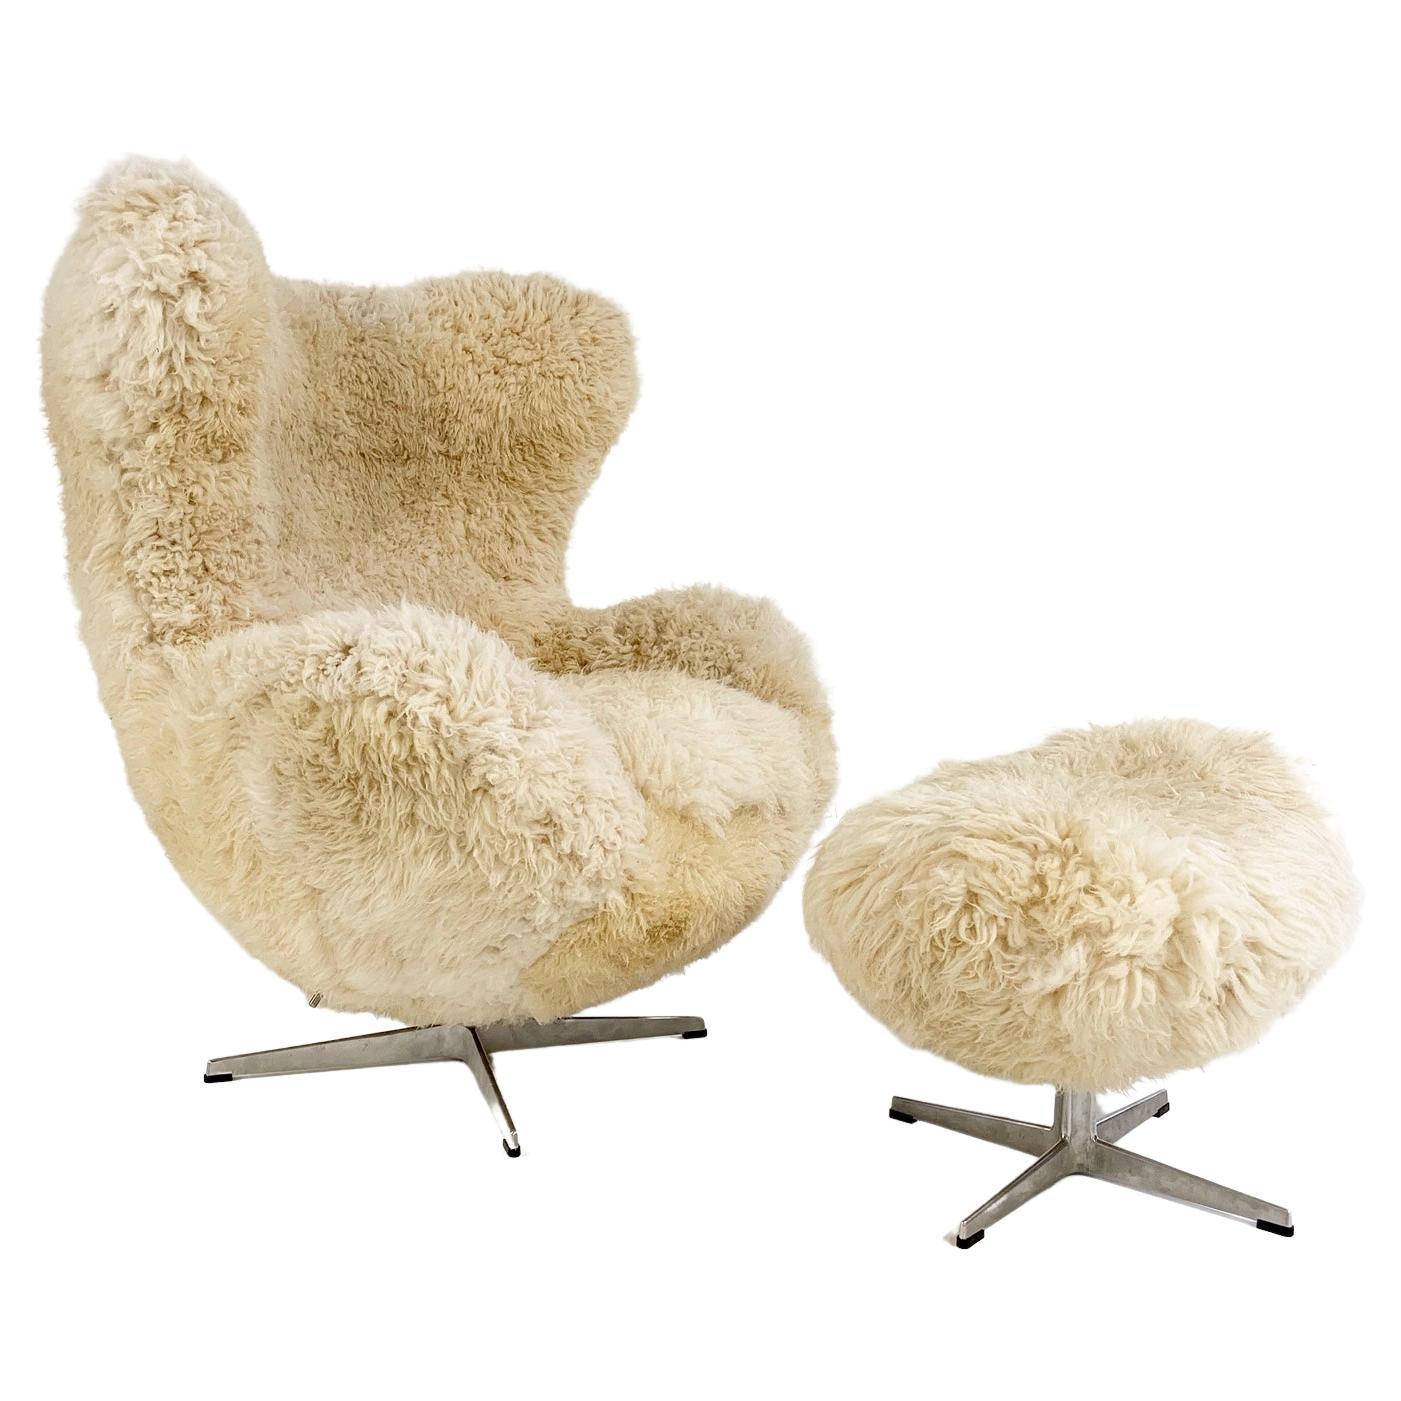 Forsyth Bespoke Arne Jacobsen Egg Chair and Ottoman in California Sheepskin